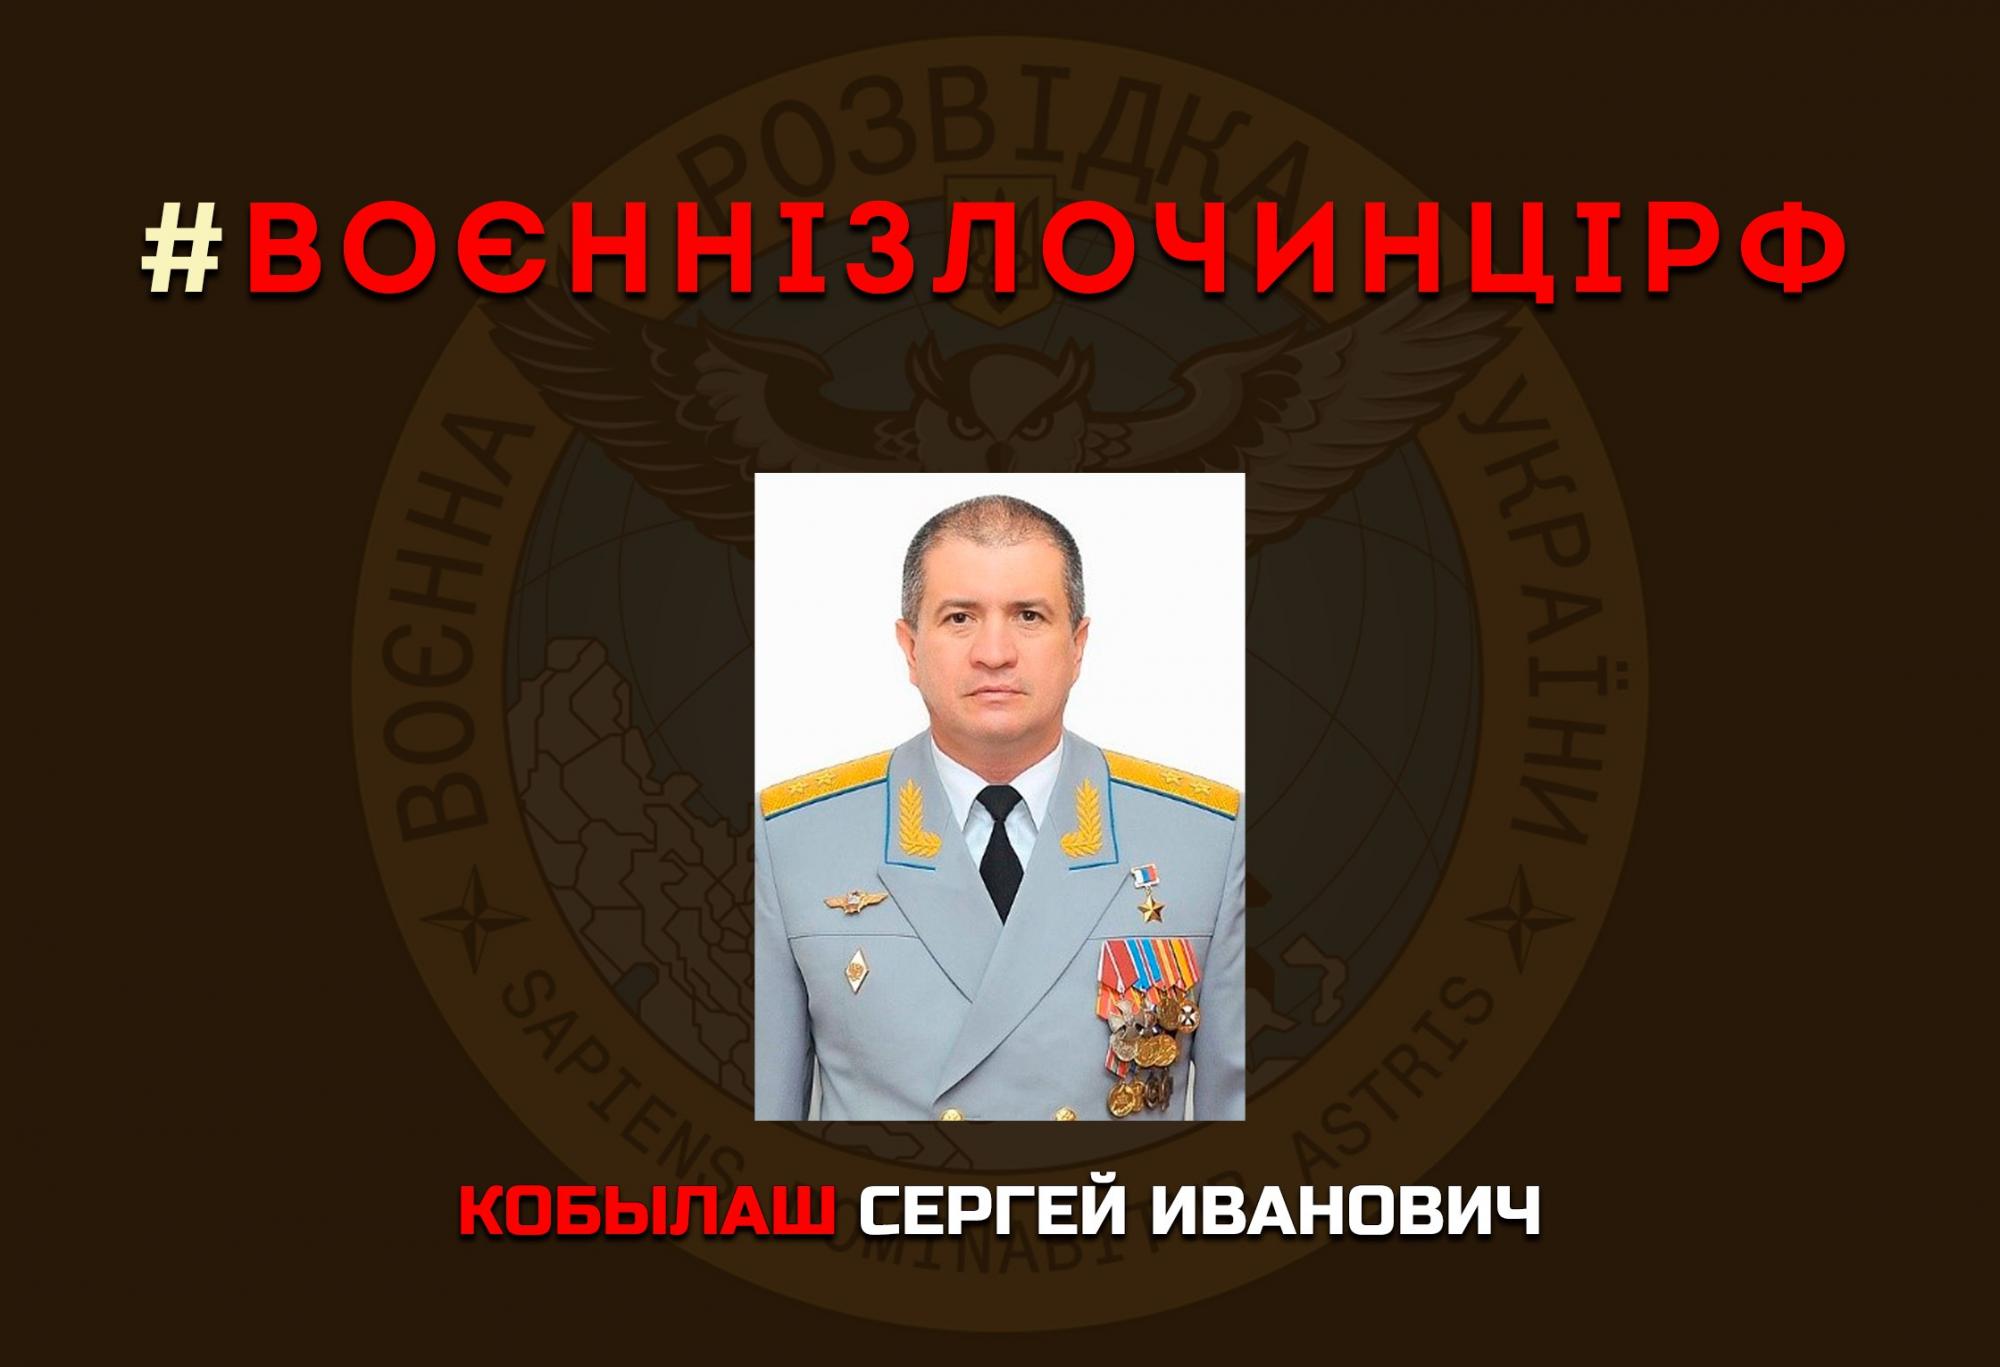 Розвідка опублікувала дані генерала-зрадника, який воює проти України